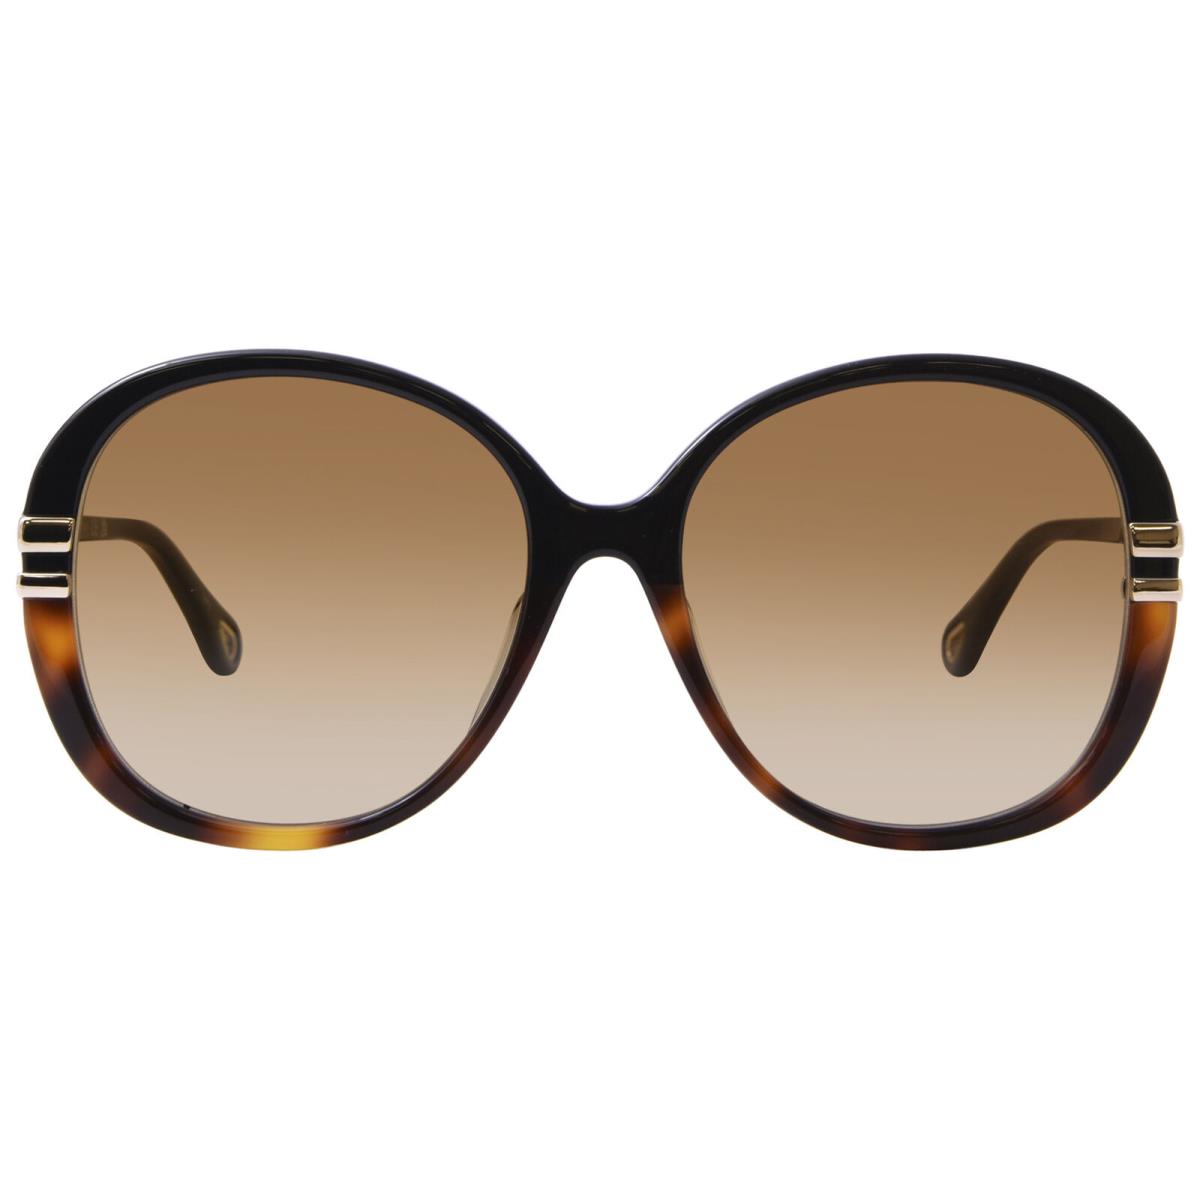 Chloe CH0207SK 003 Sunglasses Women`s Black/gold/brown Butterfly Shape 58mm